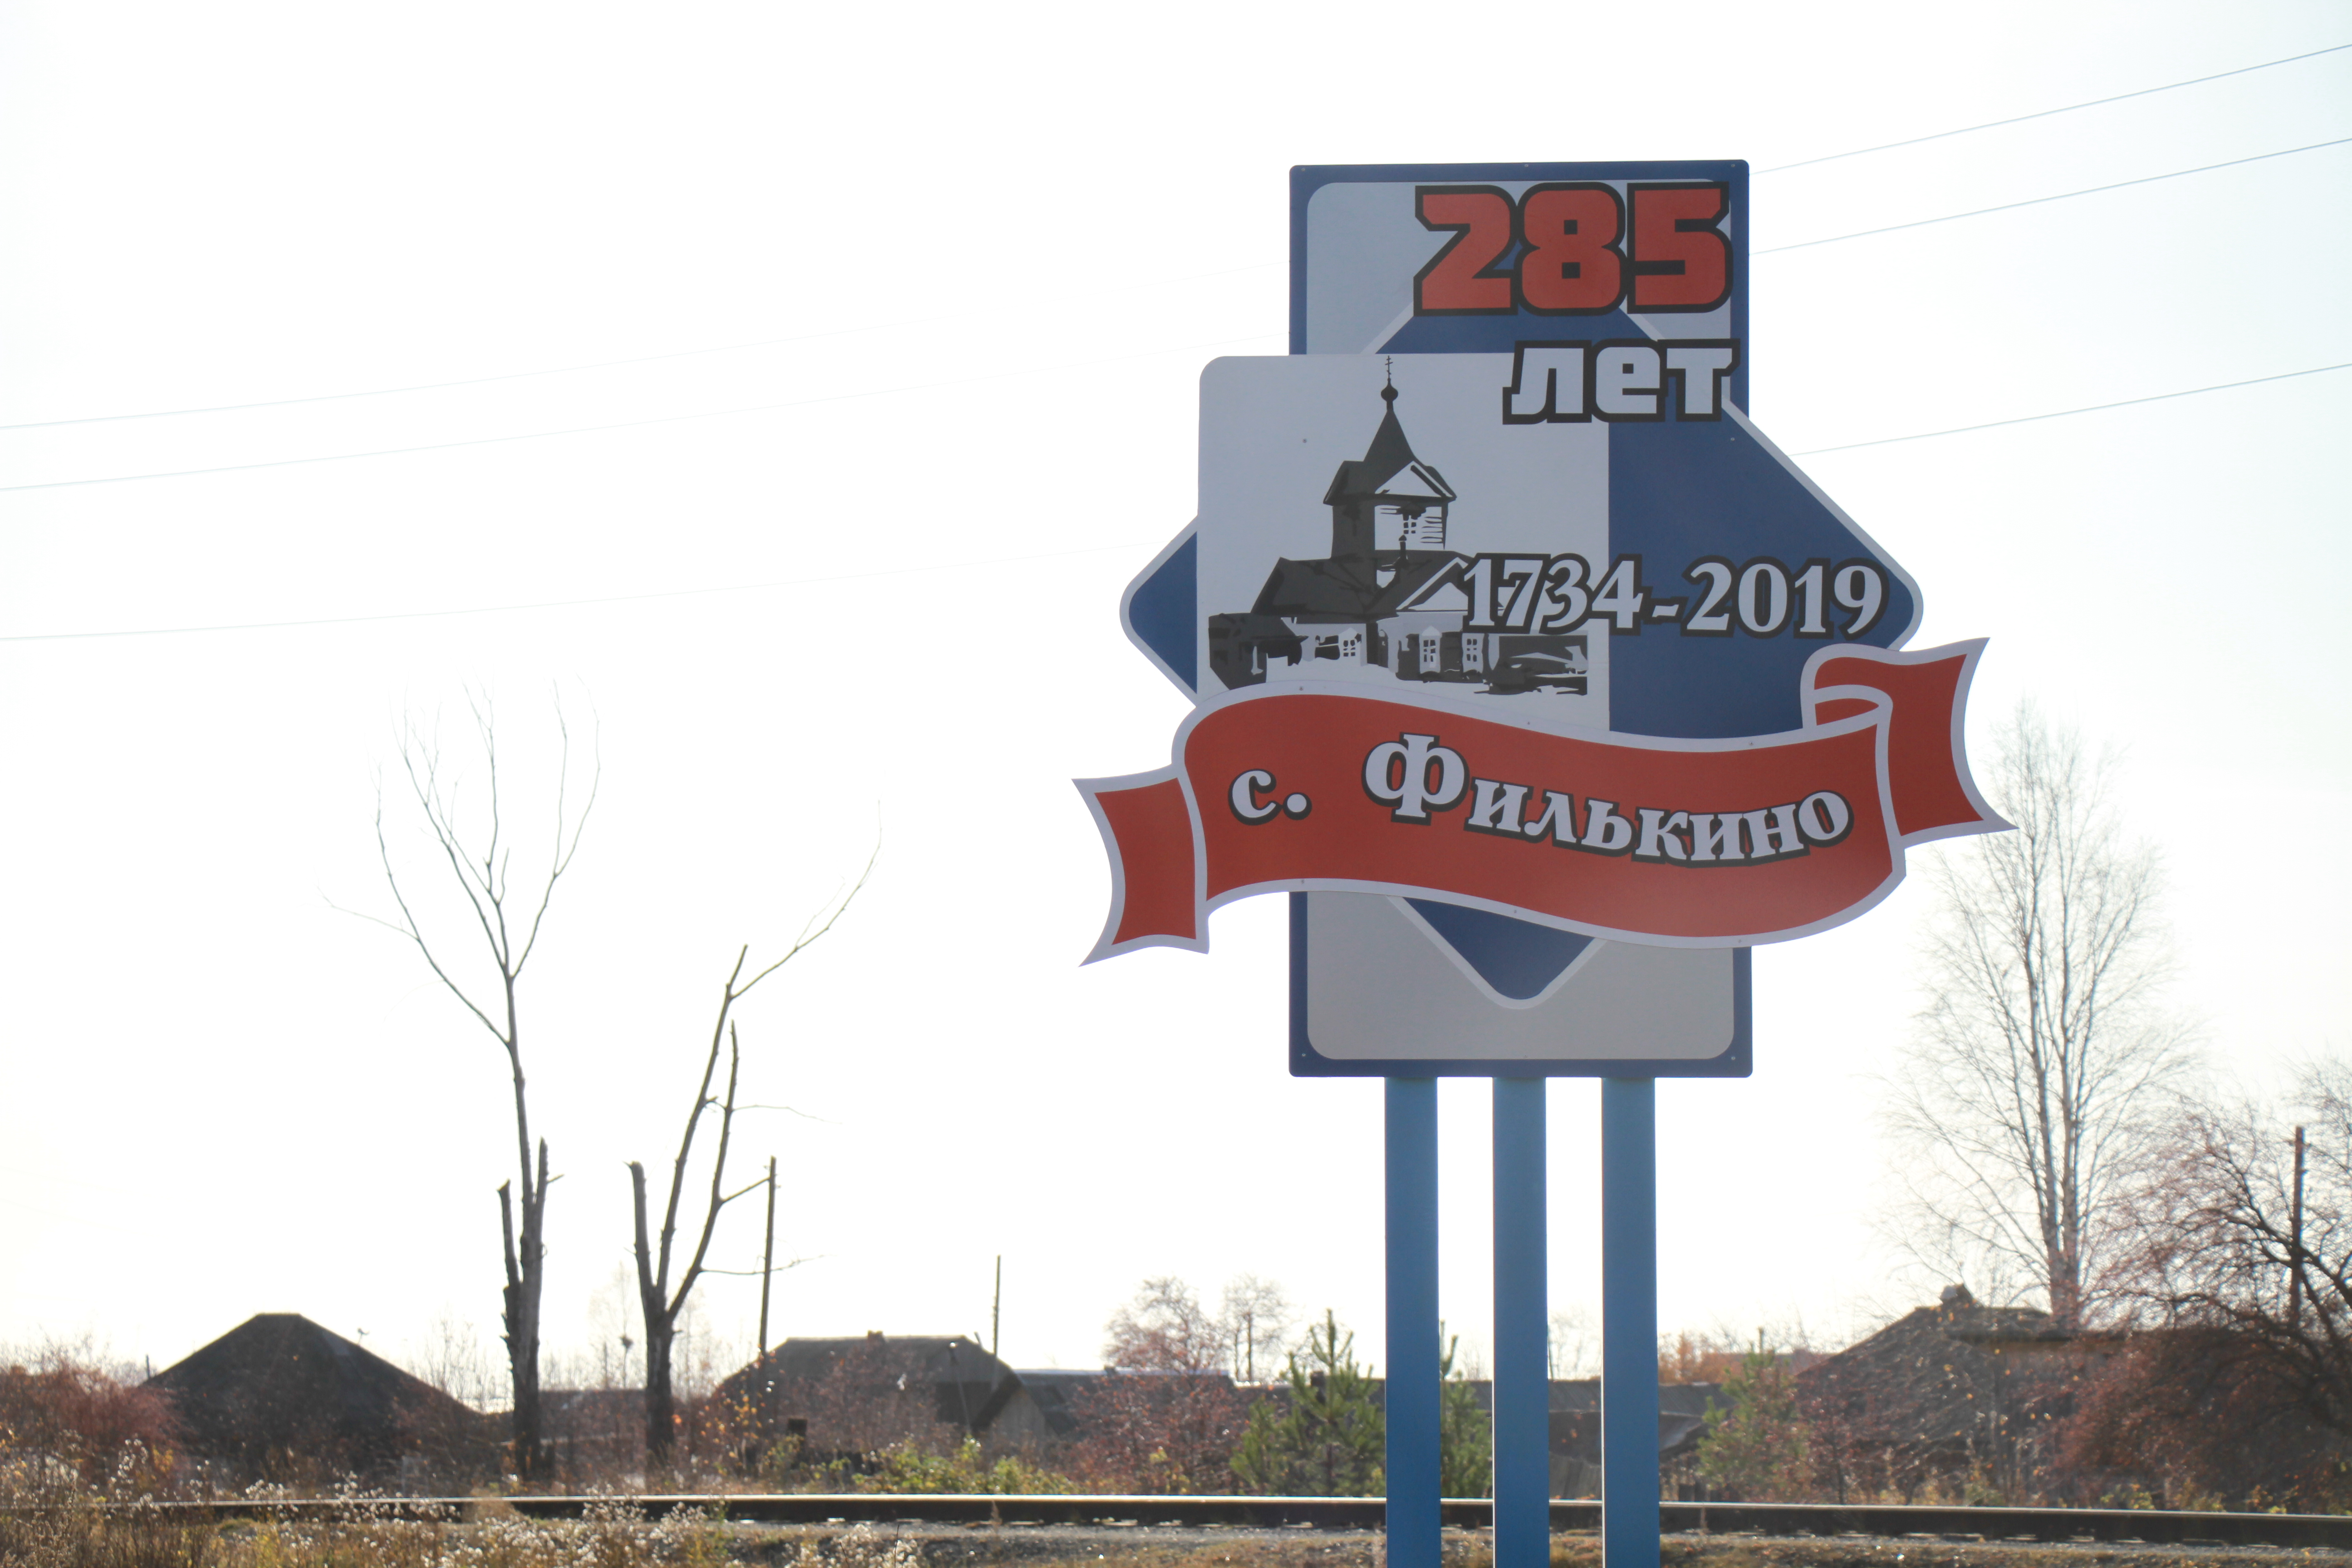 Власти Серова установили стелу, посвященную 285-летию села Филькино